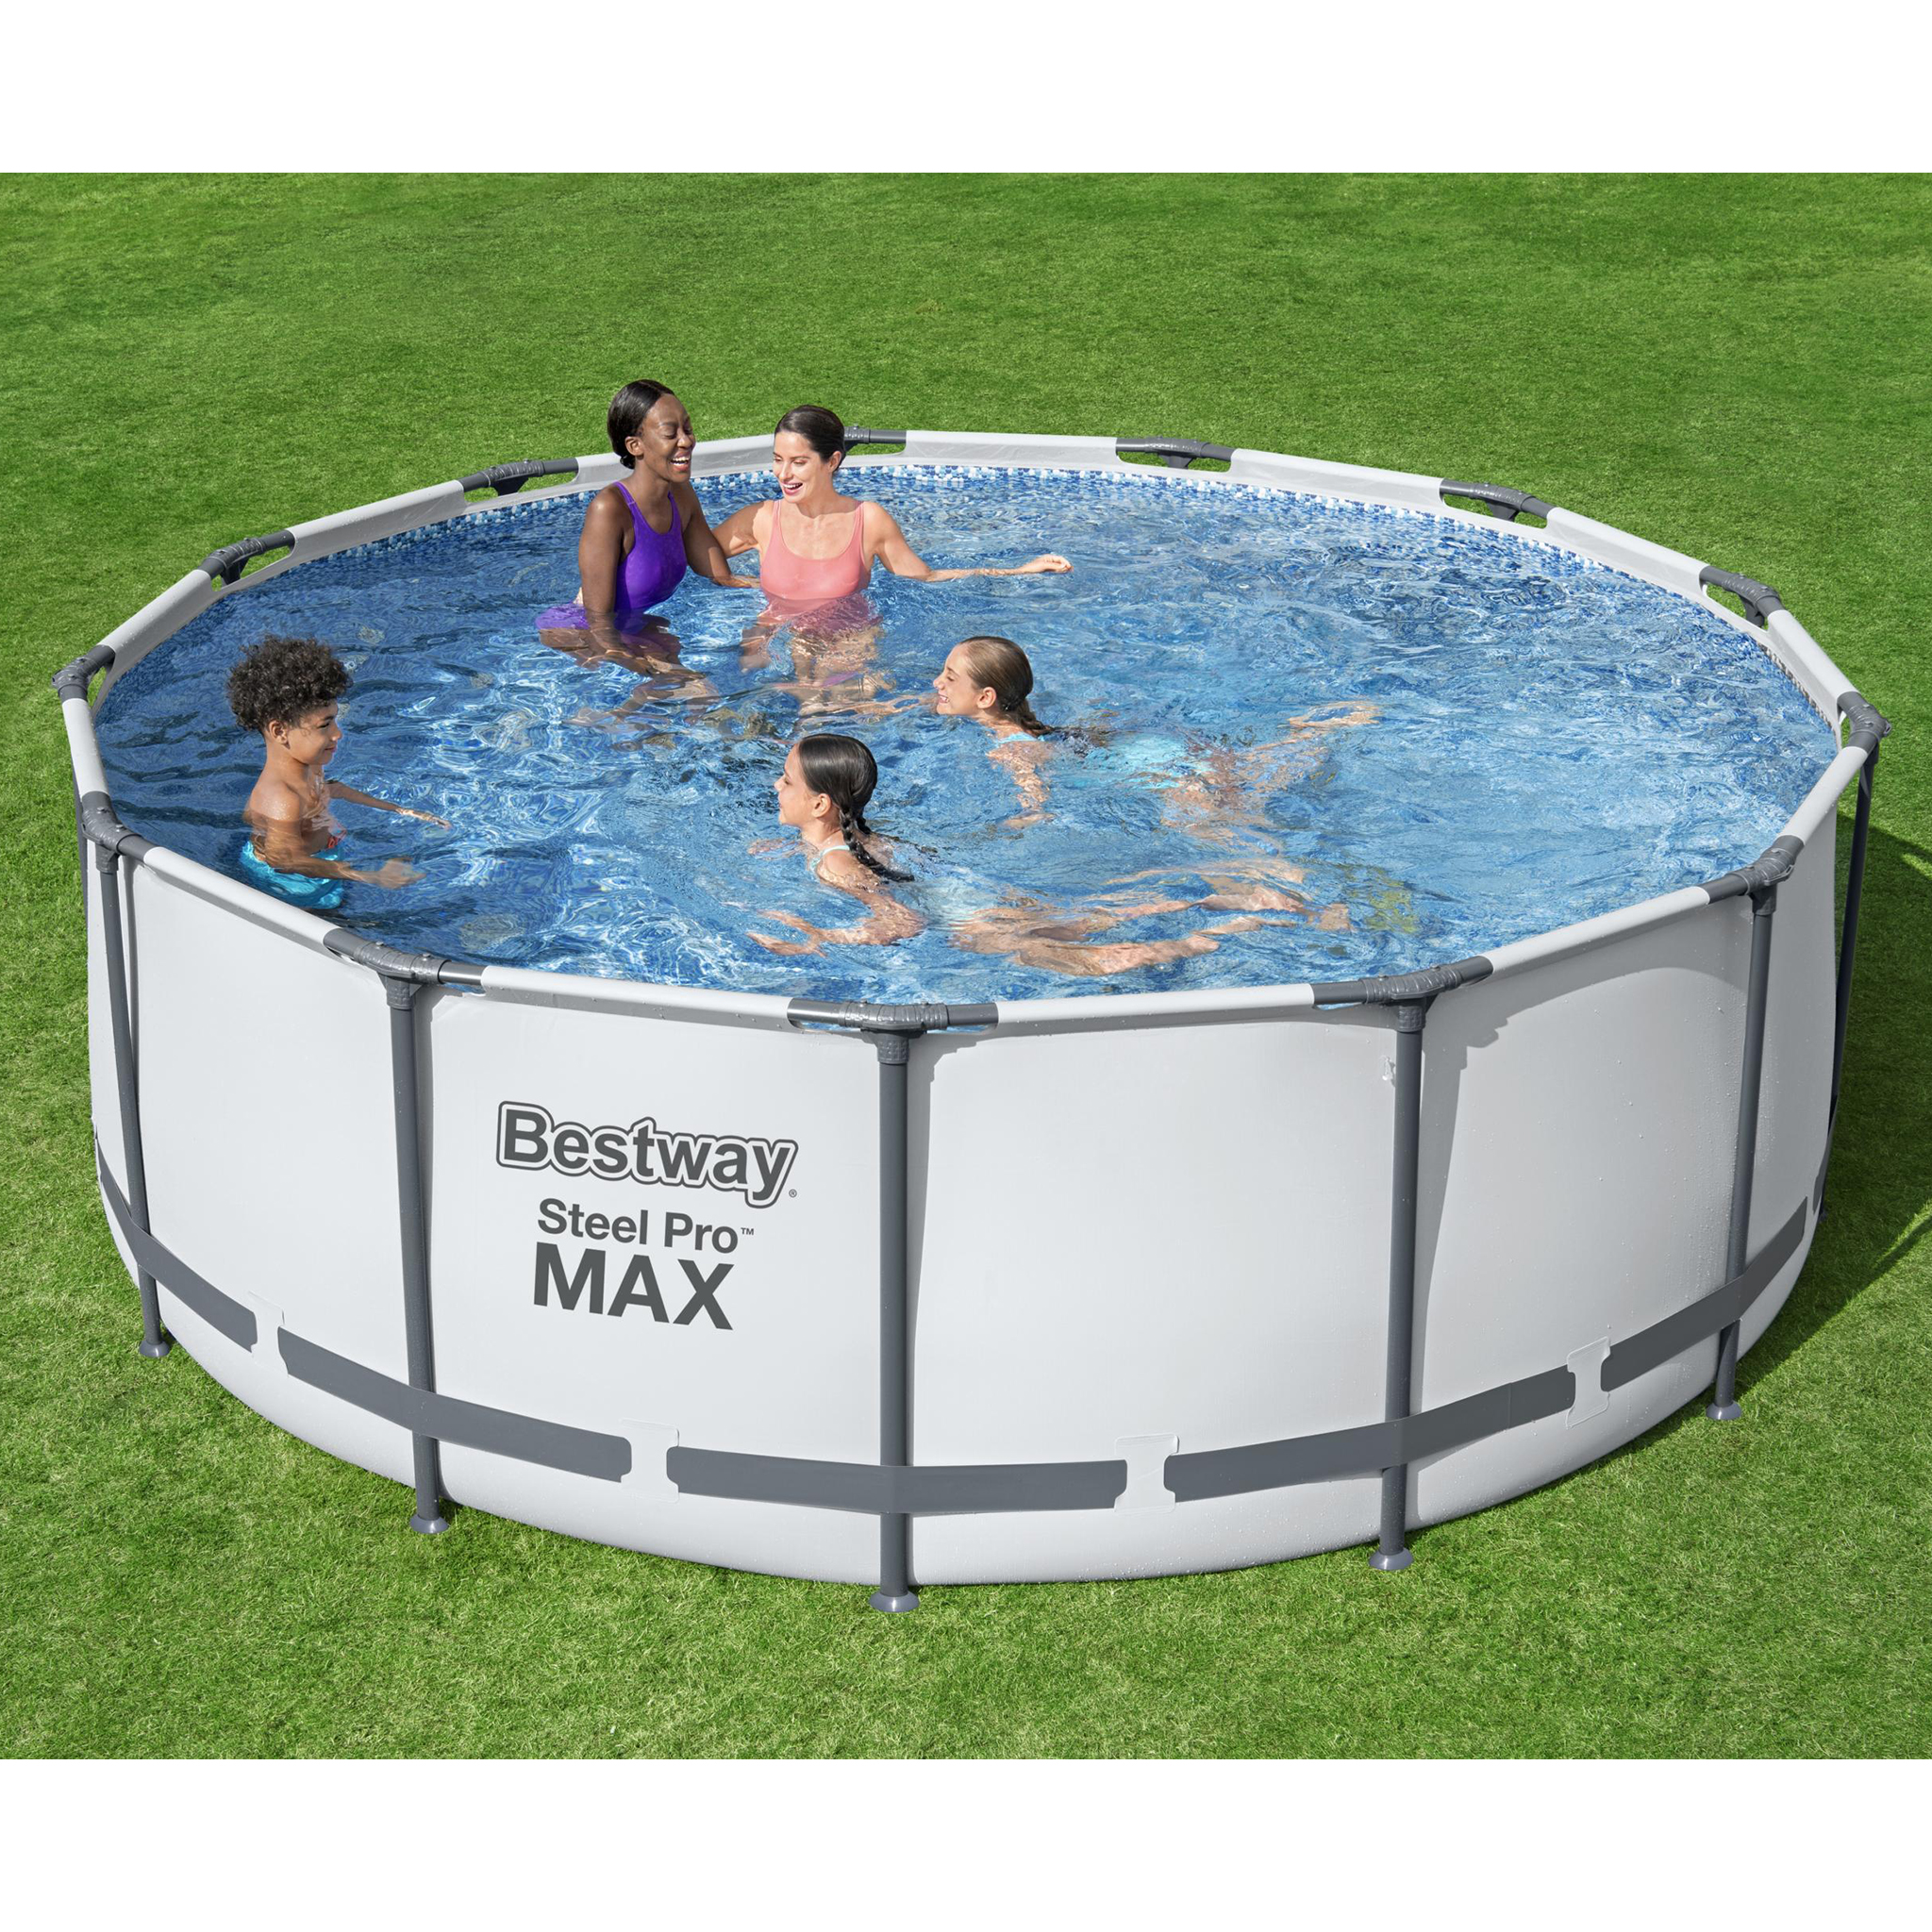 Bestway pool ovan mark Ø3,96m - 1,2m djup| Steel Pro MAX (5618W)